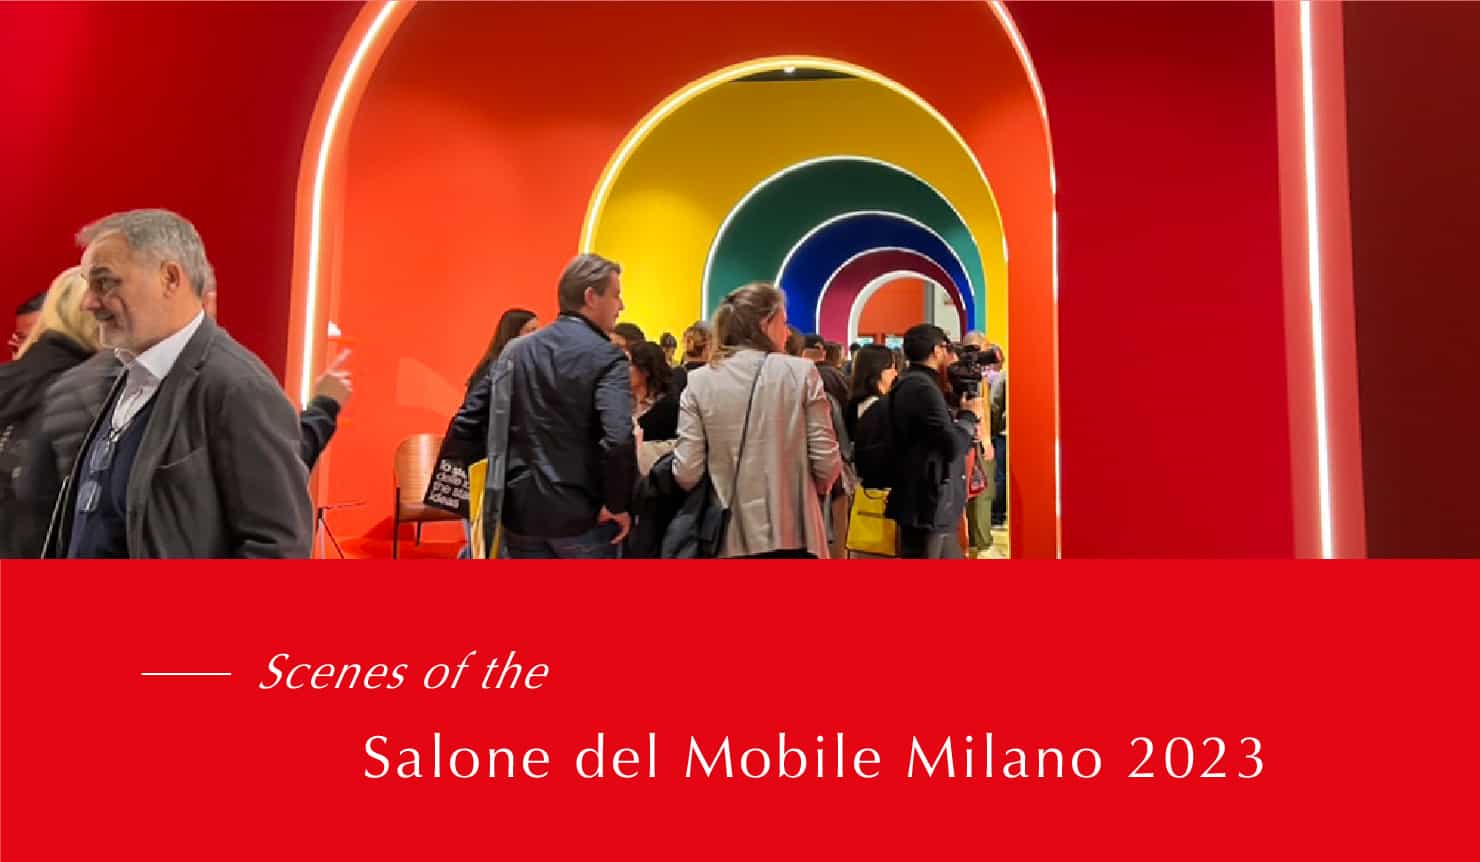 Scenes of the Salone del Mobile Milano 2023